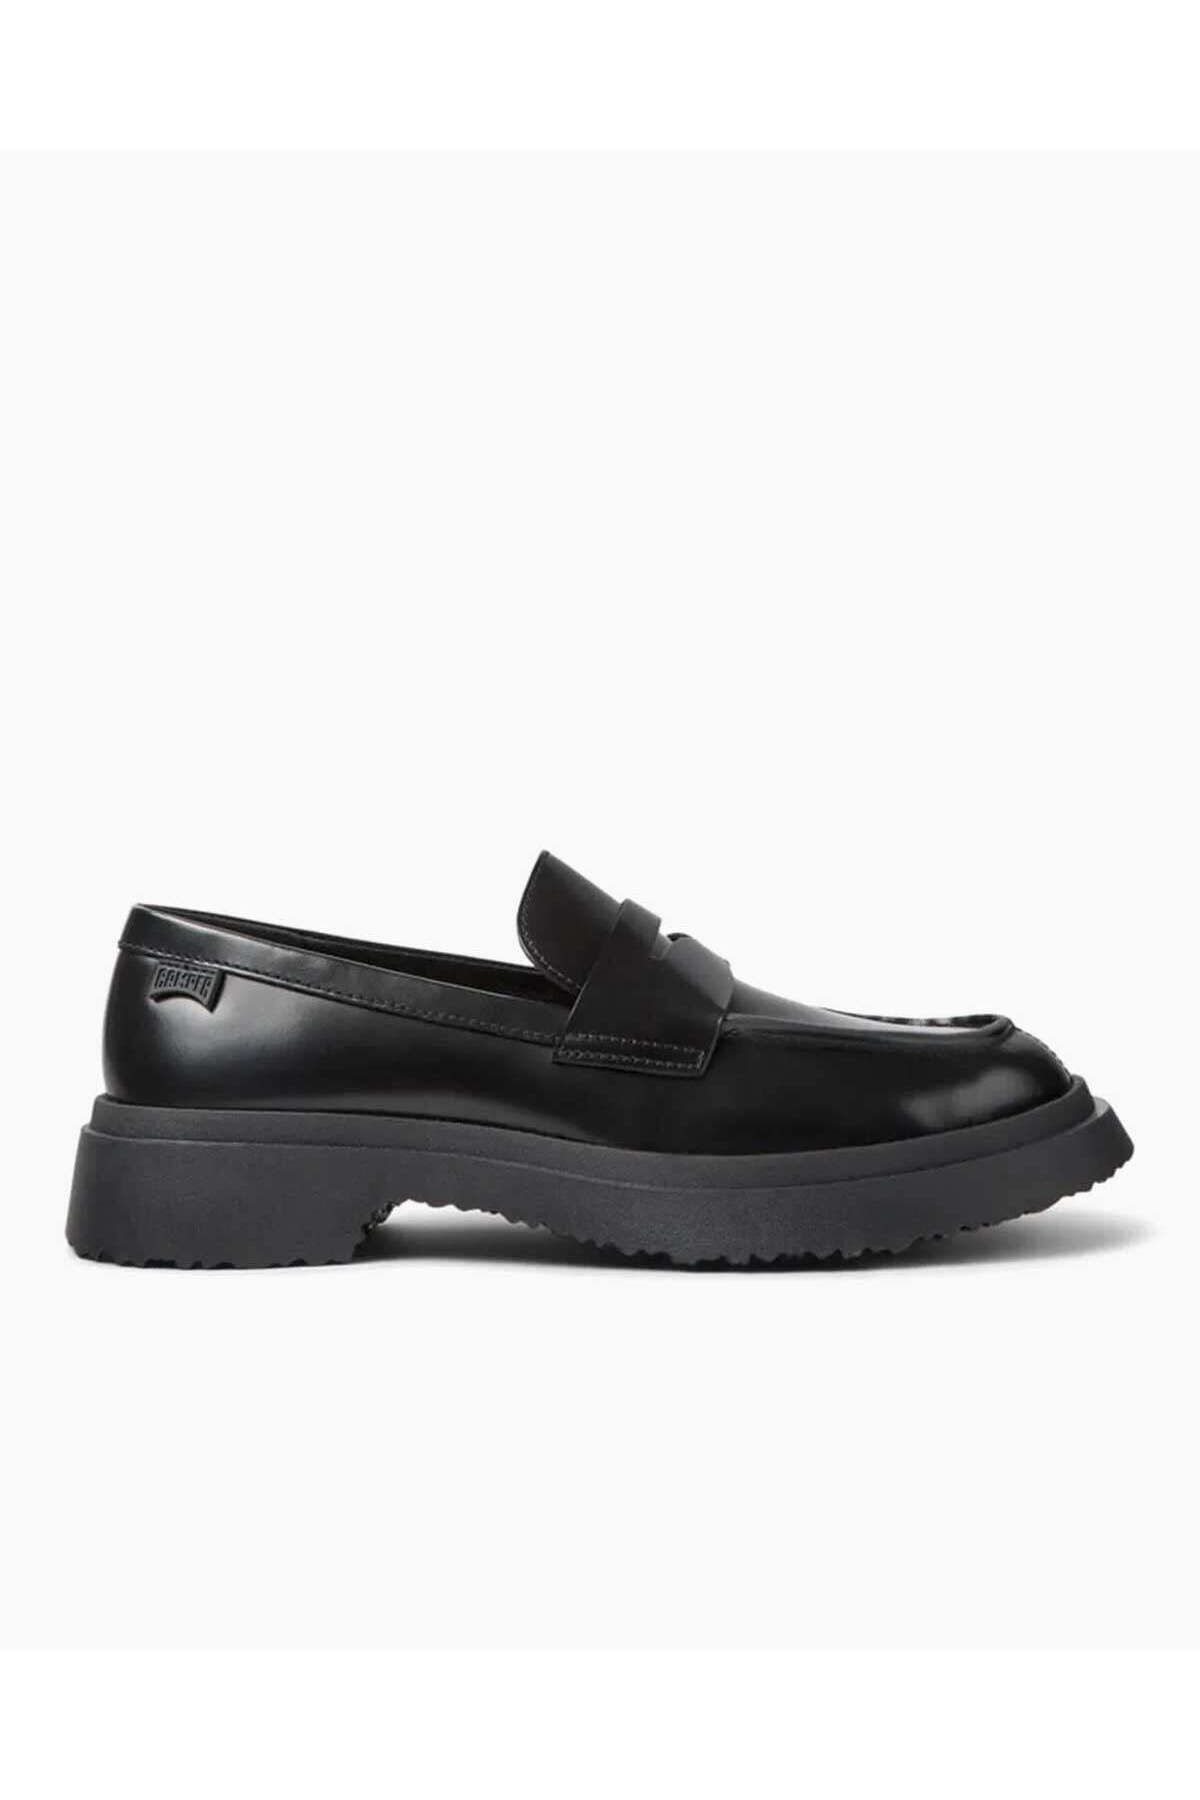 CAMPER Kadın Siyah Casual Ayakkabı K201116-019